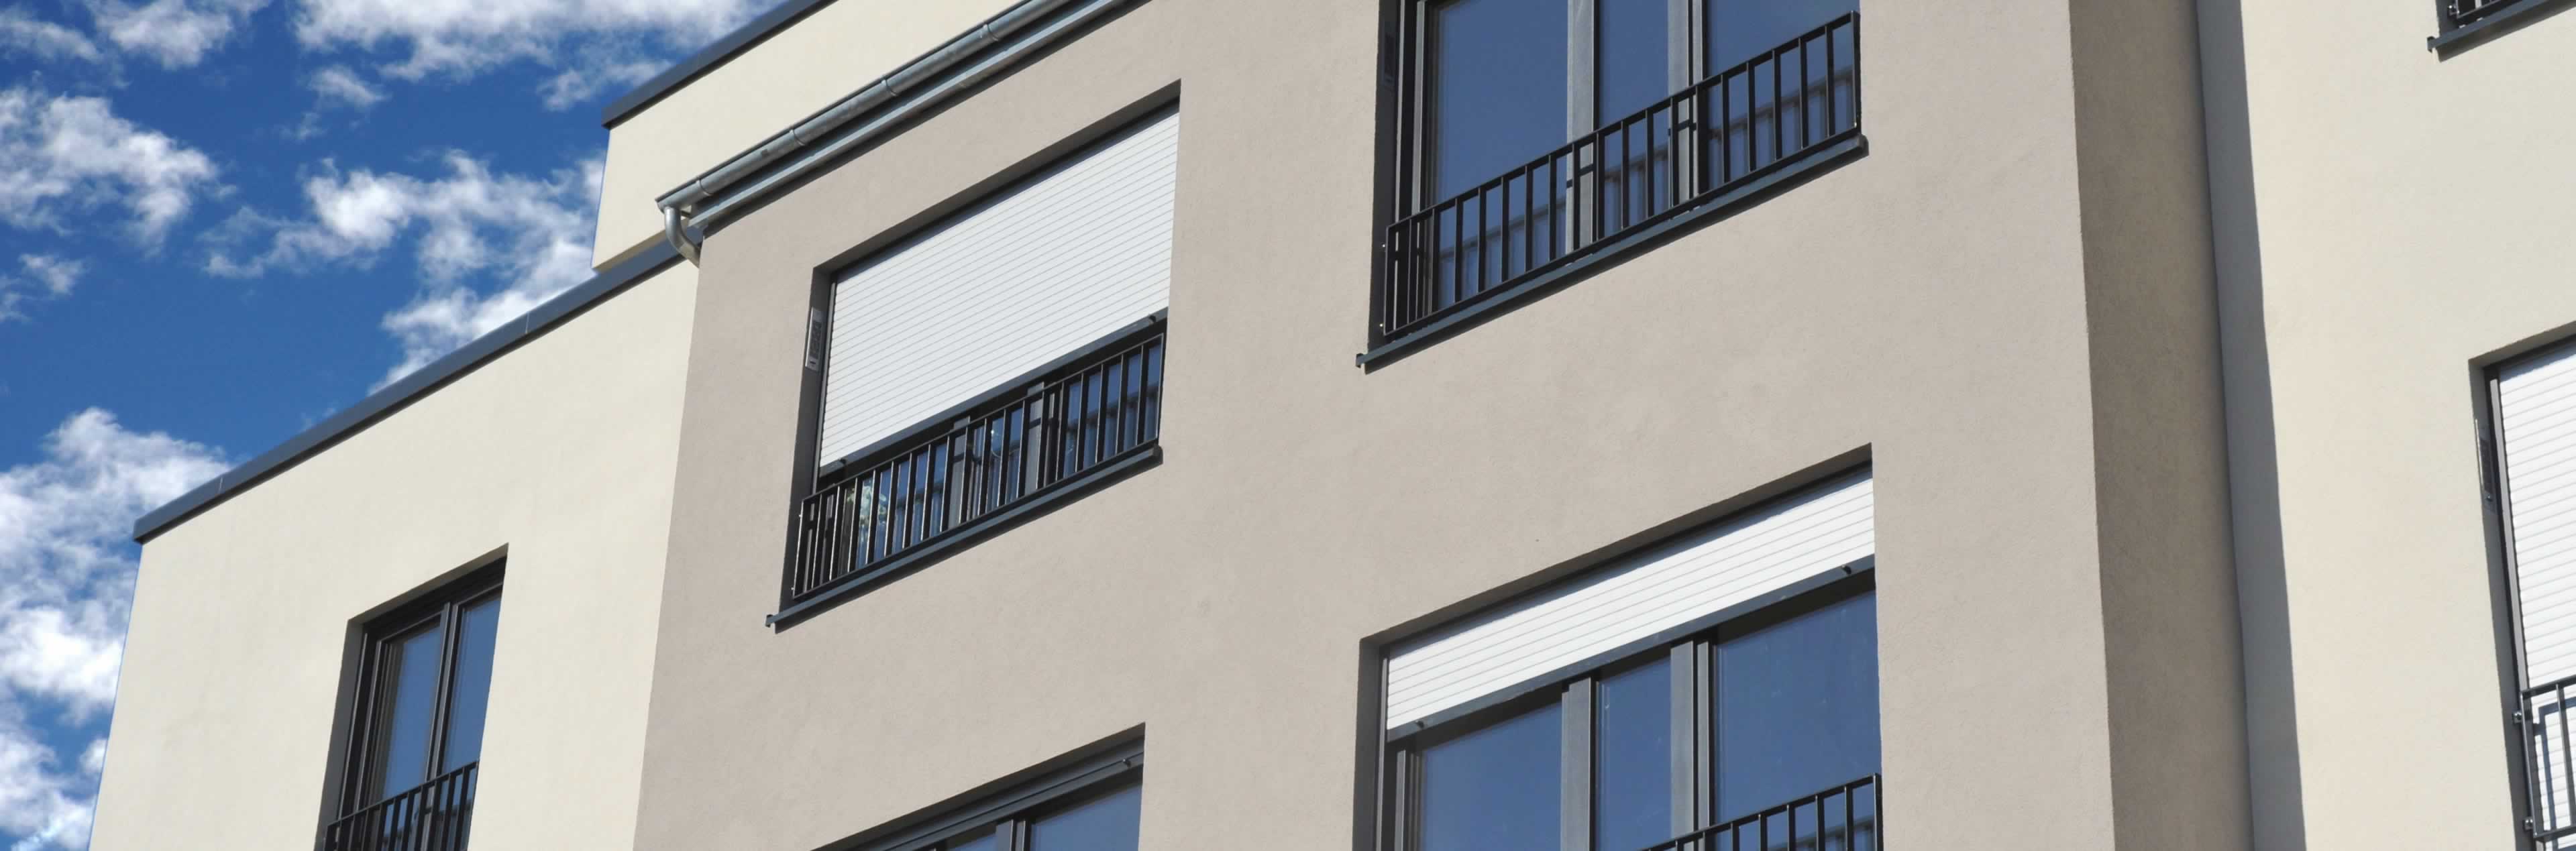 Vorbaurollladen zum Sonnenschutz an Fensterfronten auch im Raum Augsburg Bayreuth oder Koblenz